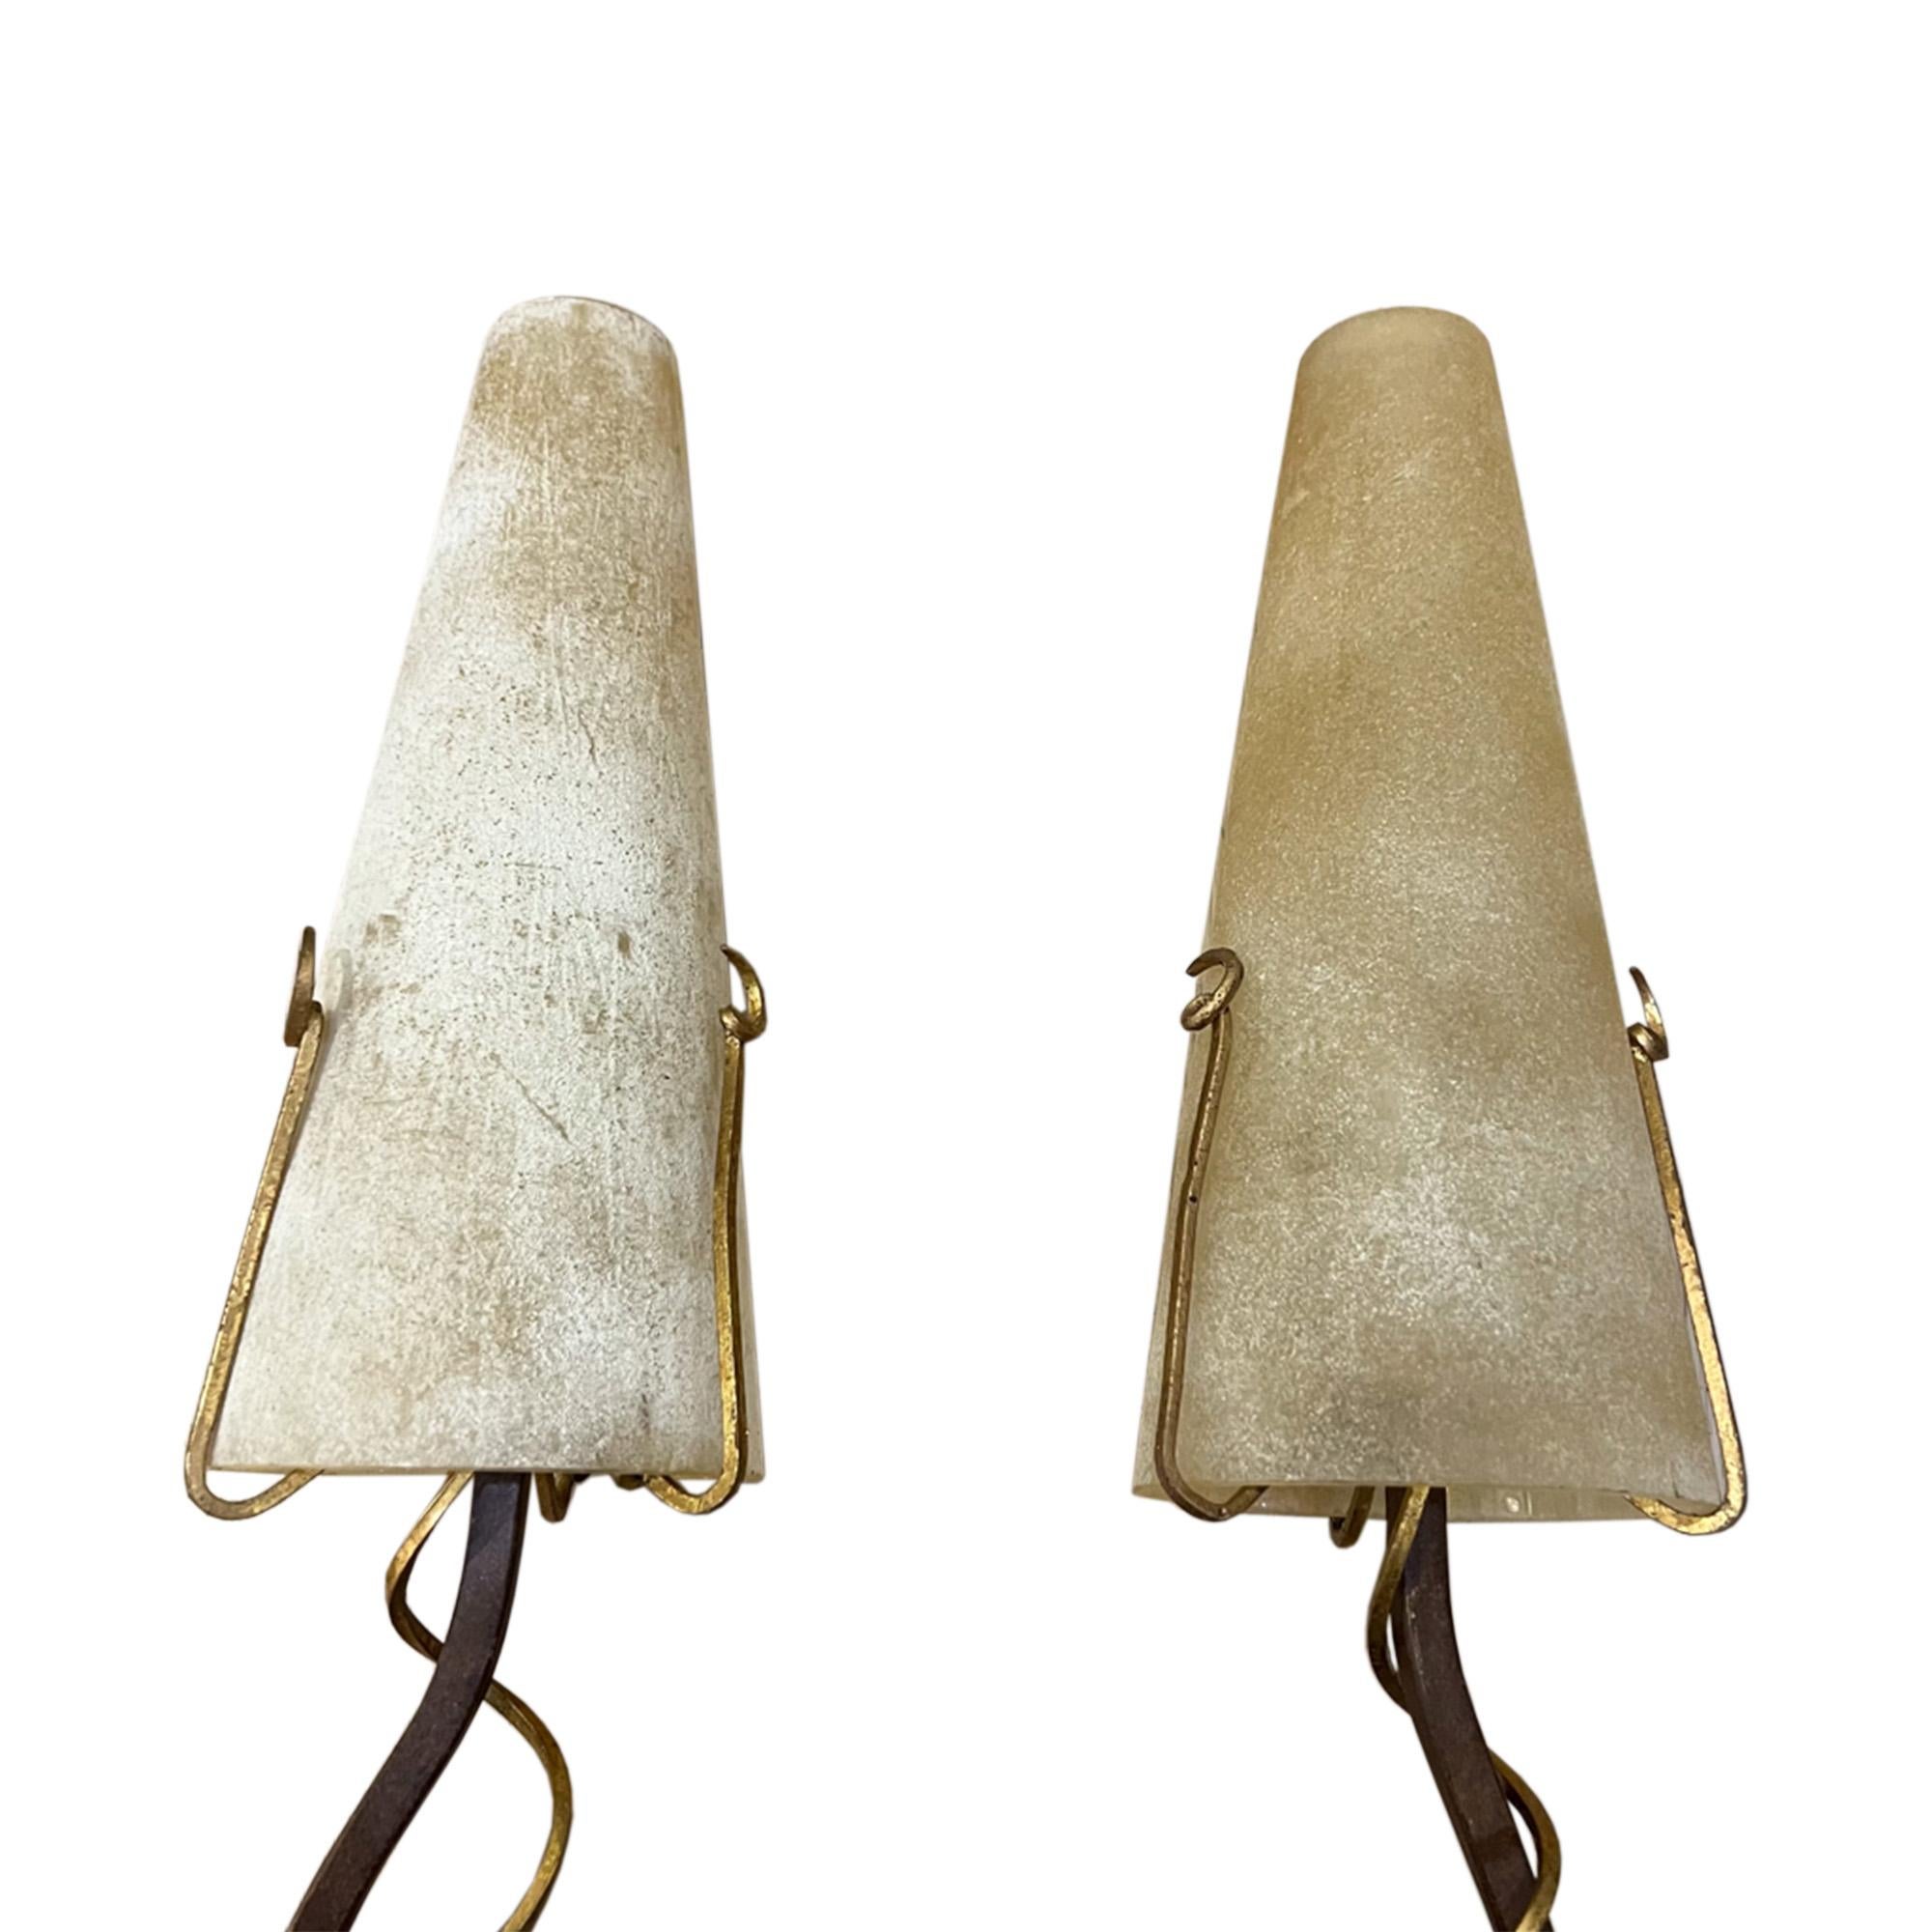 Il s'agit d'une paire d'appliques fantastiques, fabriquées dans les années 1980 par Masca en Italie. Les deux lampes portent le nom du fabricant en écriture dorée. 

Making Works en fer forgé et métal doré, avec les abat-jours coniques en verre